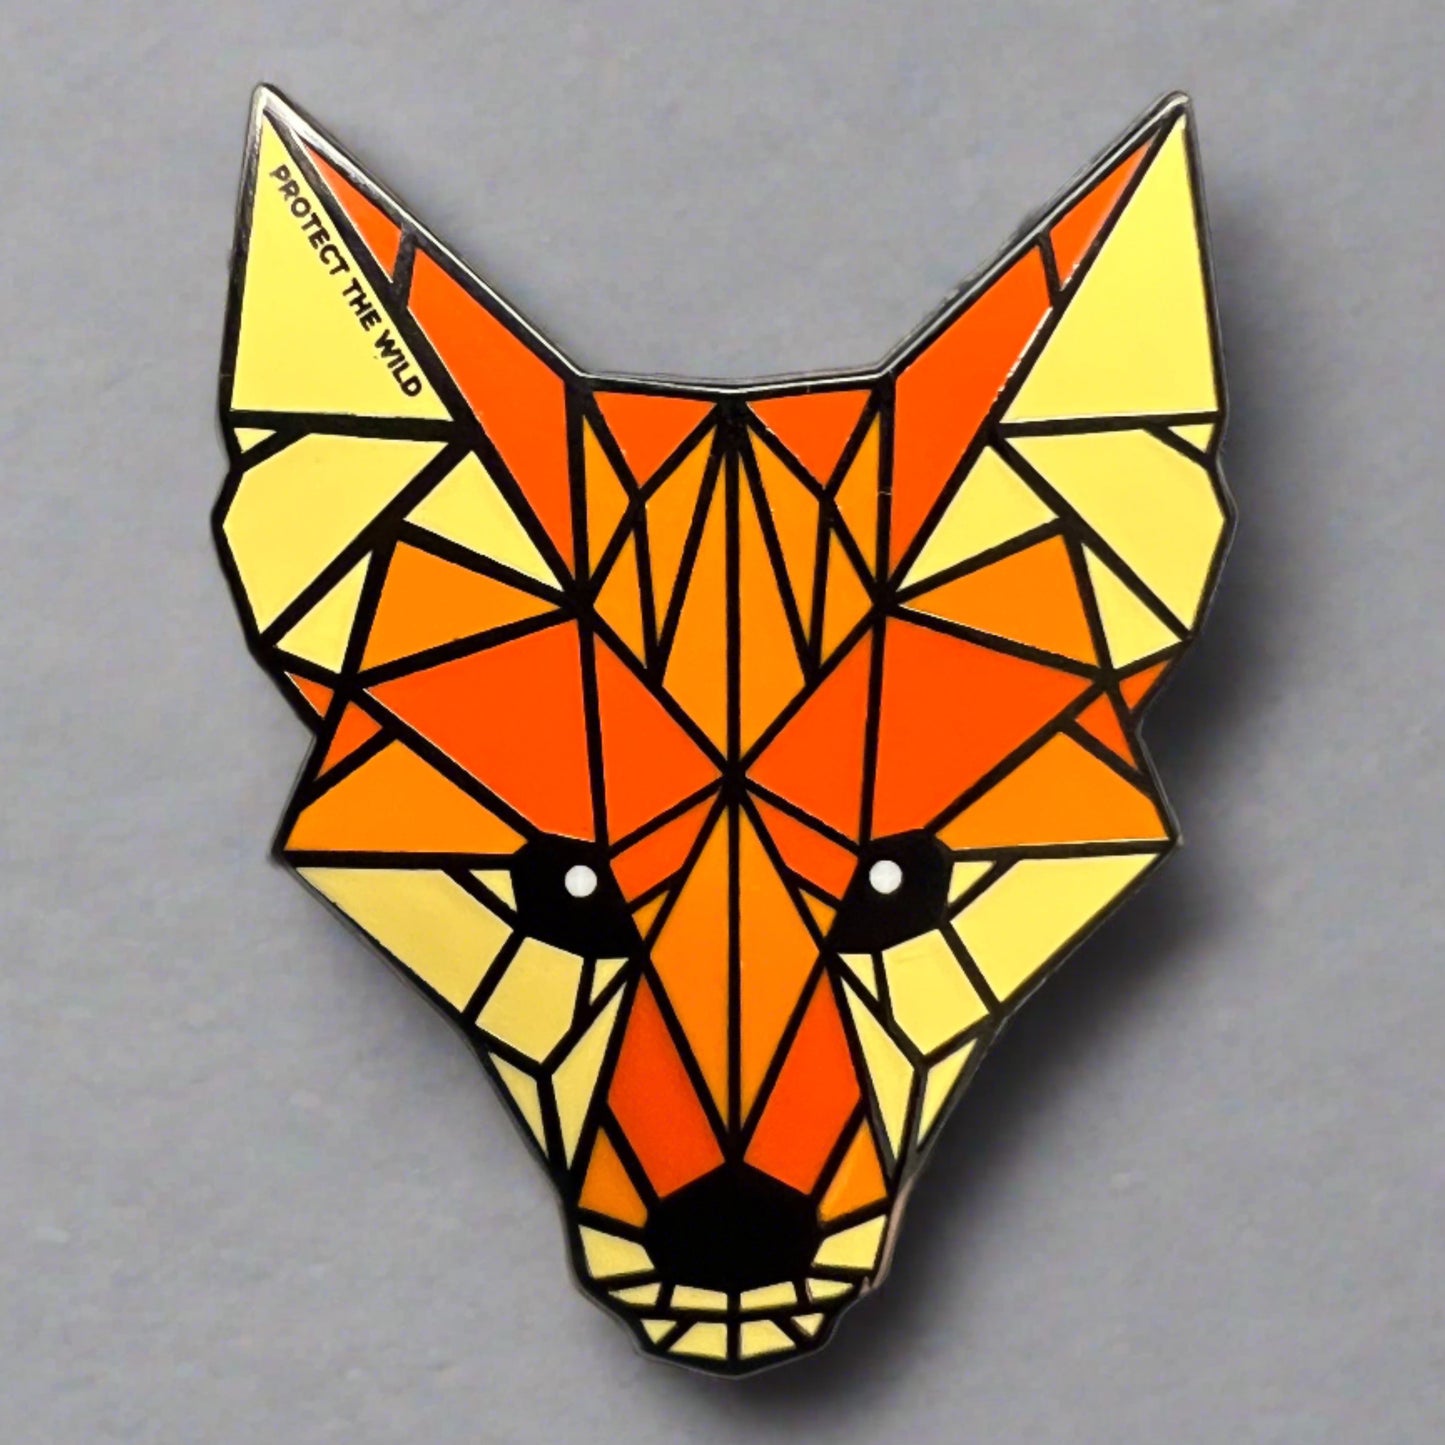 PTW Fox pin badge